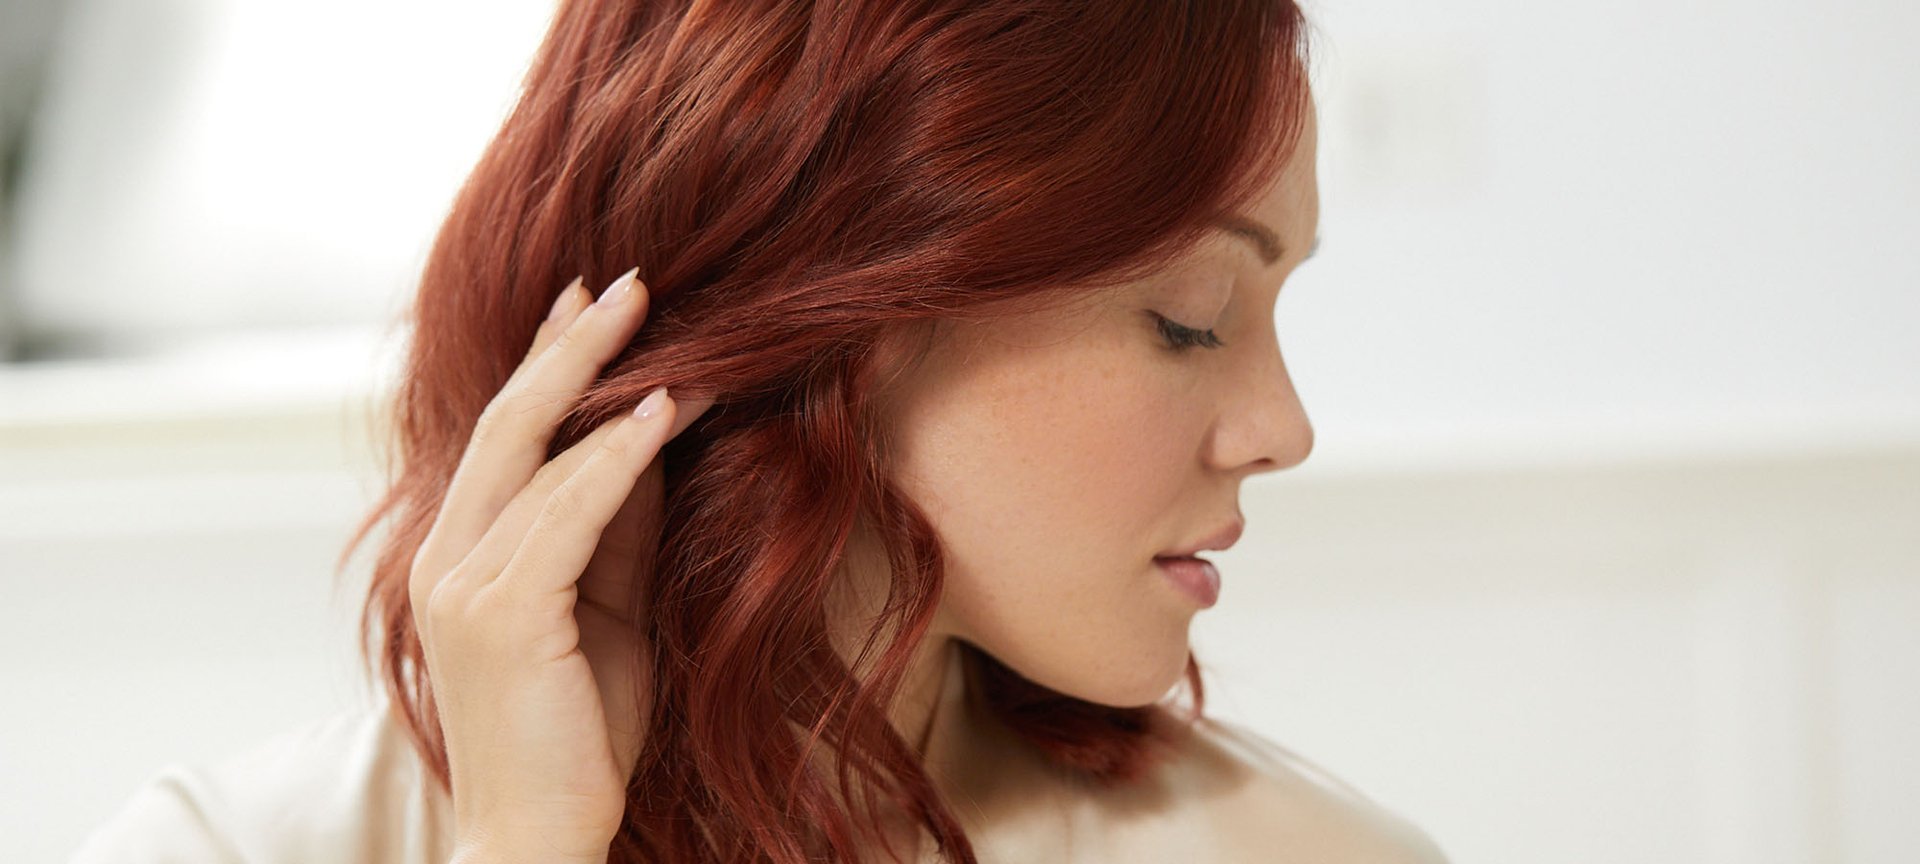 L'Oréal Paris DIA Richesse Semi Permanent Light Brown Hair Color